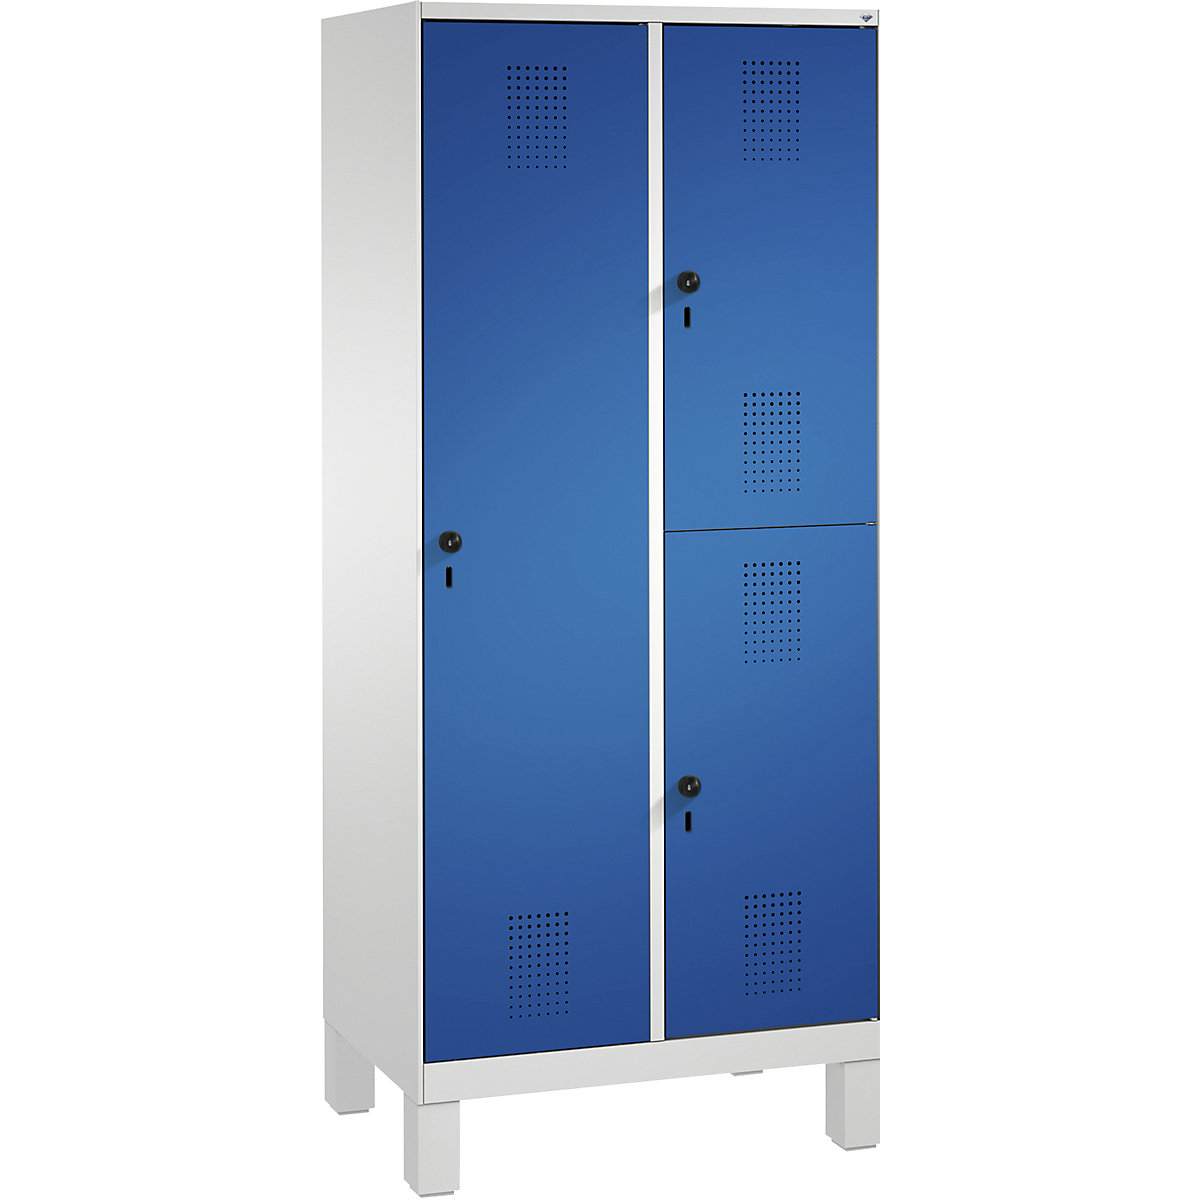 Kombinovaná skříň EVOLO, jednopatrová a dvoupatrová – C+P, 2 oddíly, 3 dveře, šířka oddílu 400 mm, s nohami, světlá šedá / enciánová modrá-13